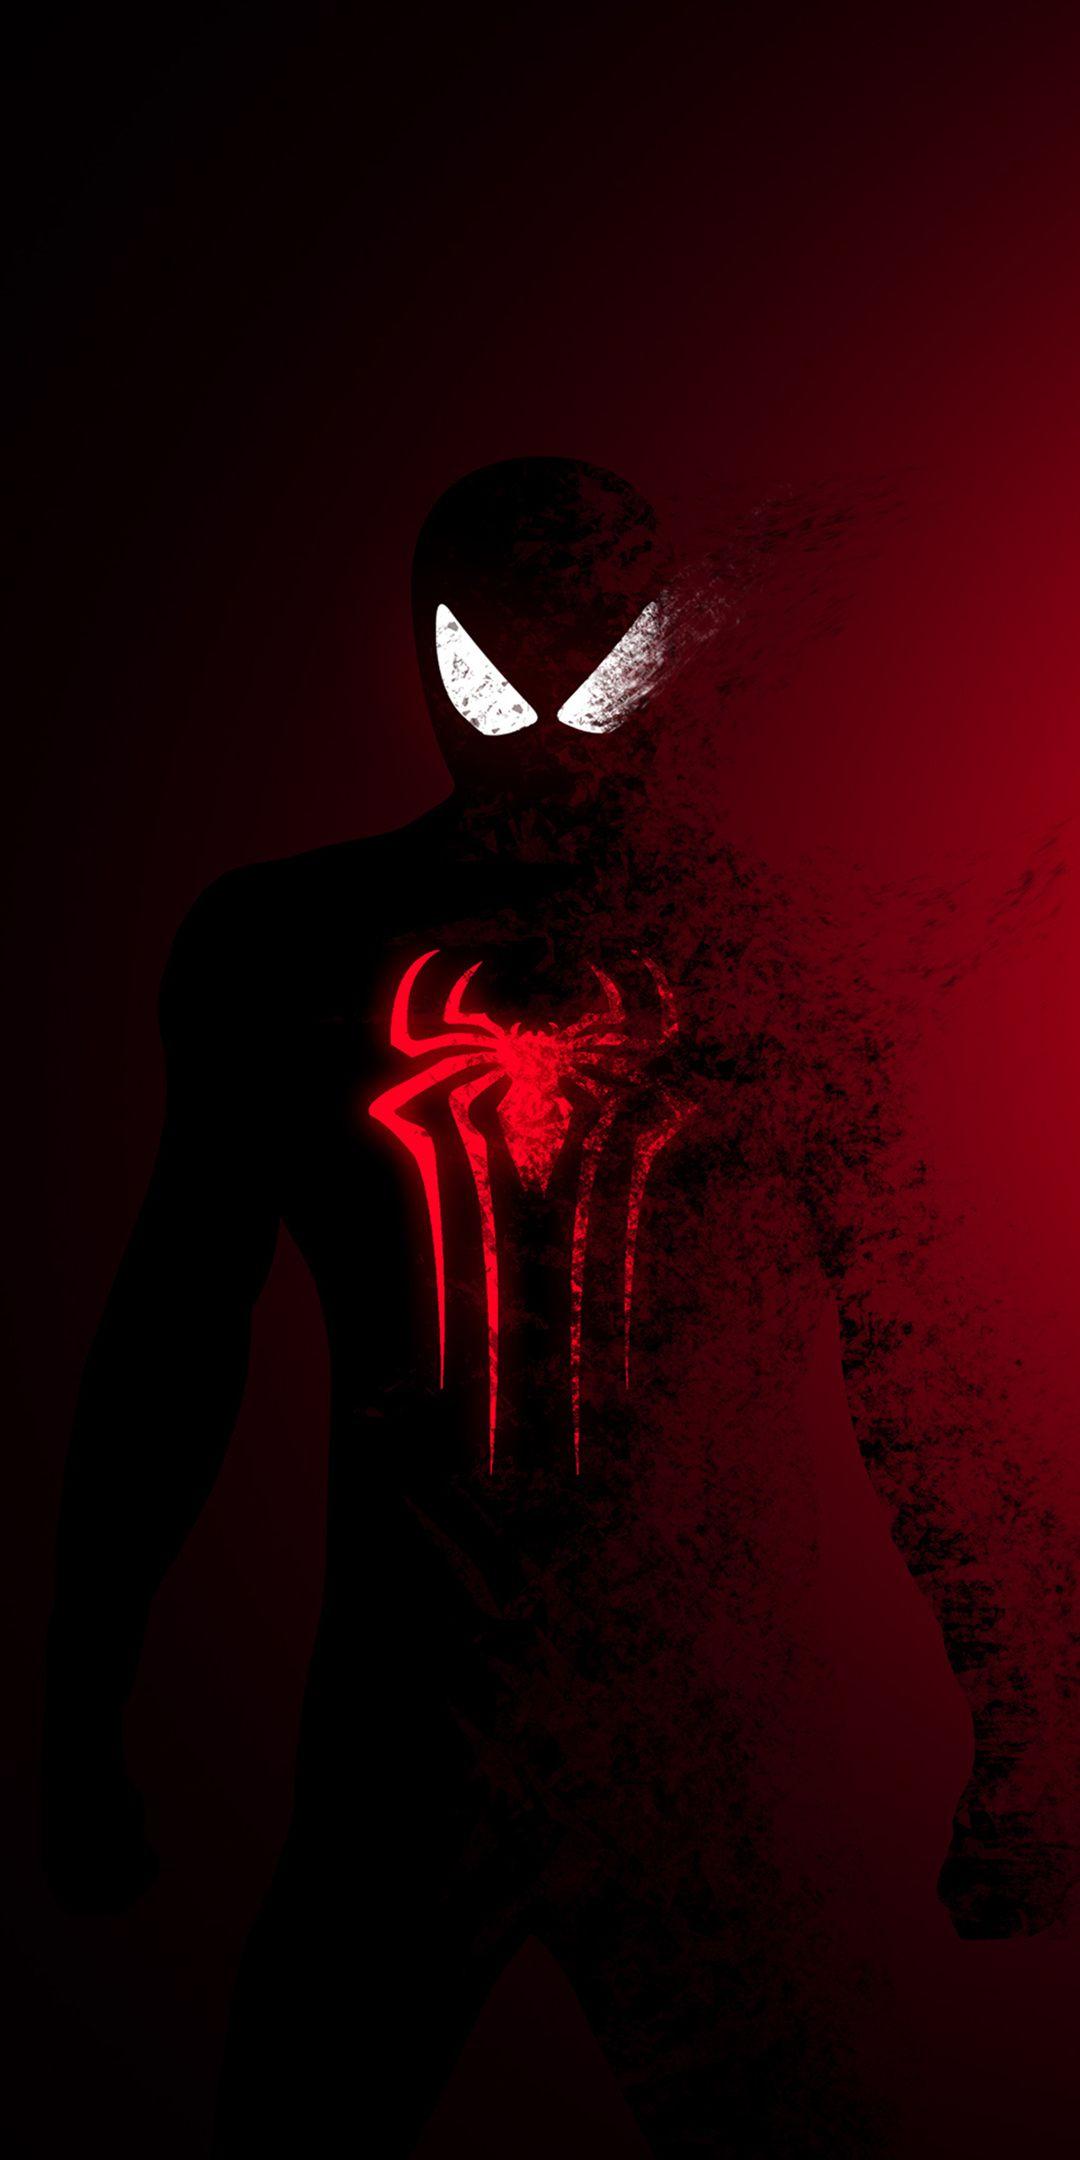 Spider Man, Spider Man: Far From Home, Dark Red, Fade